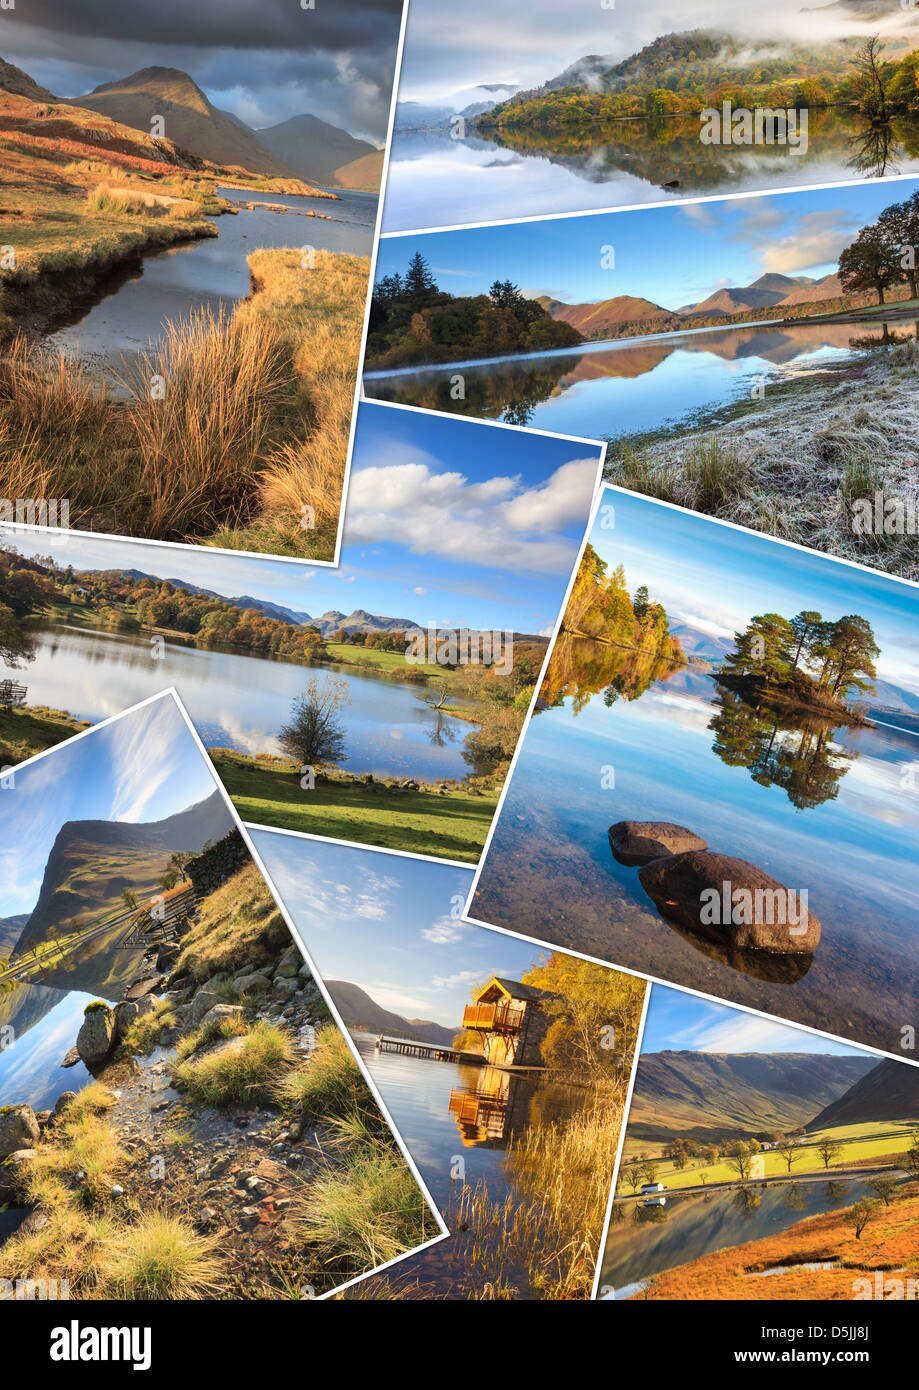 Un montaggio di 8 immagini del Parco Nazionale del Distretto dei Laghi Foto Stock